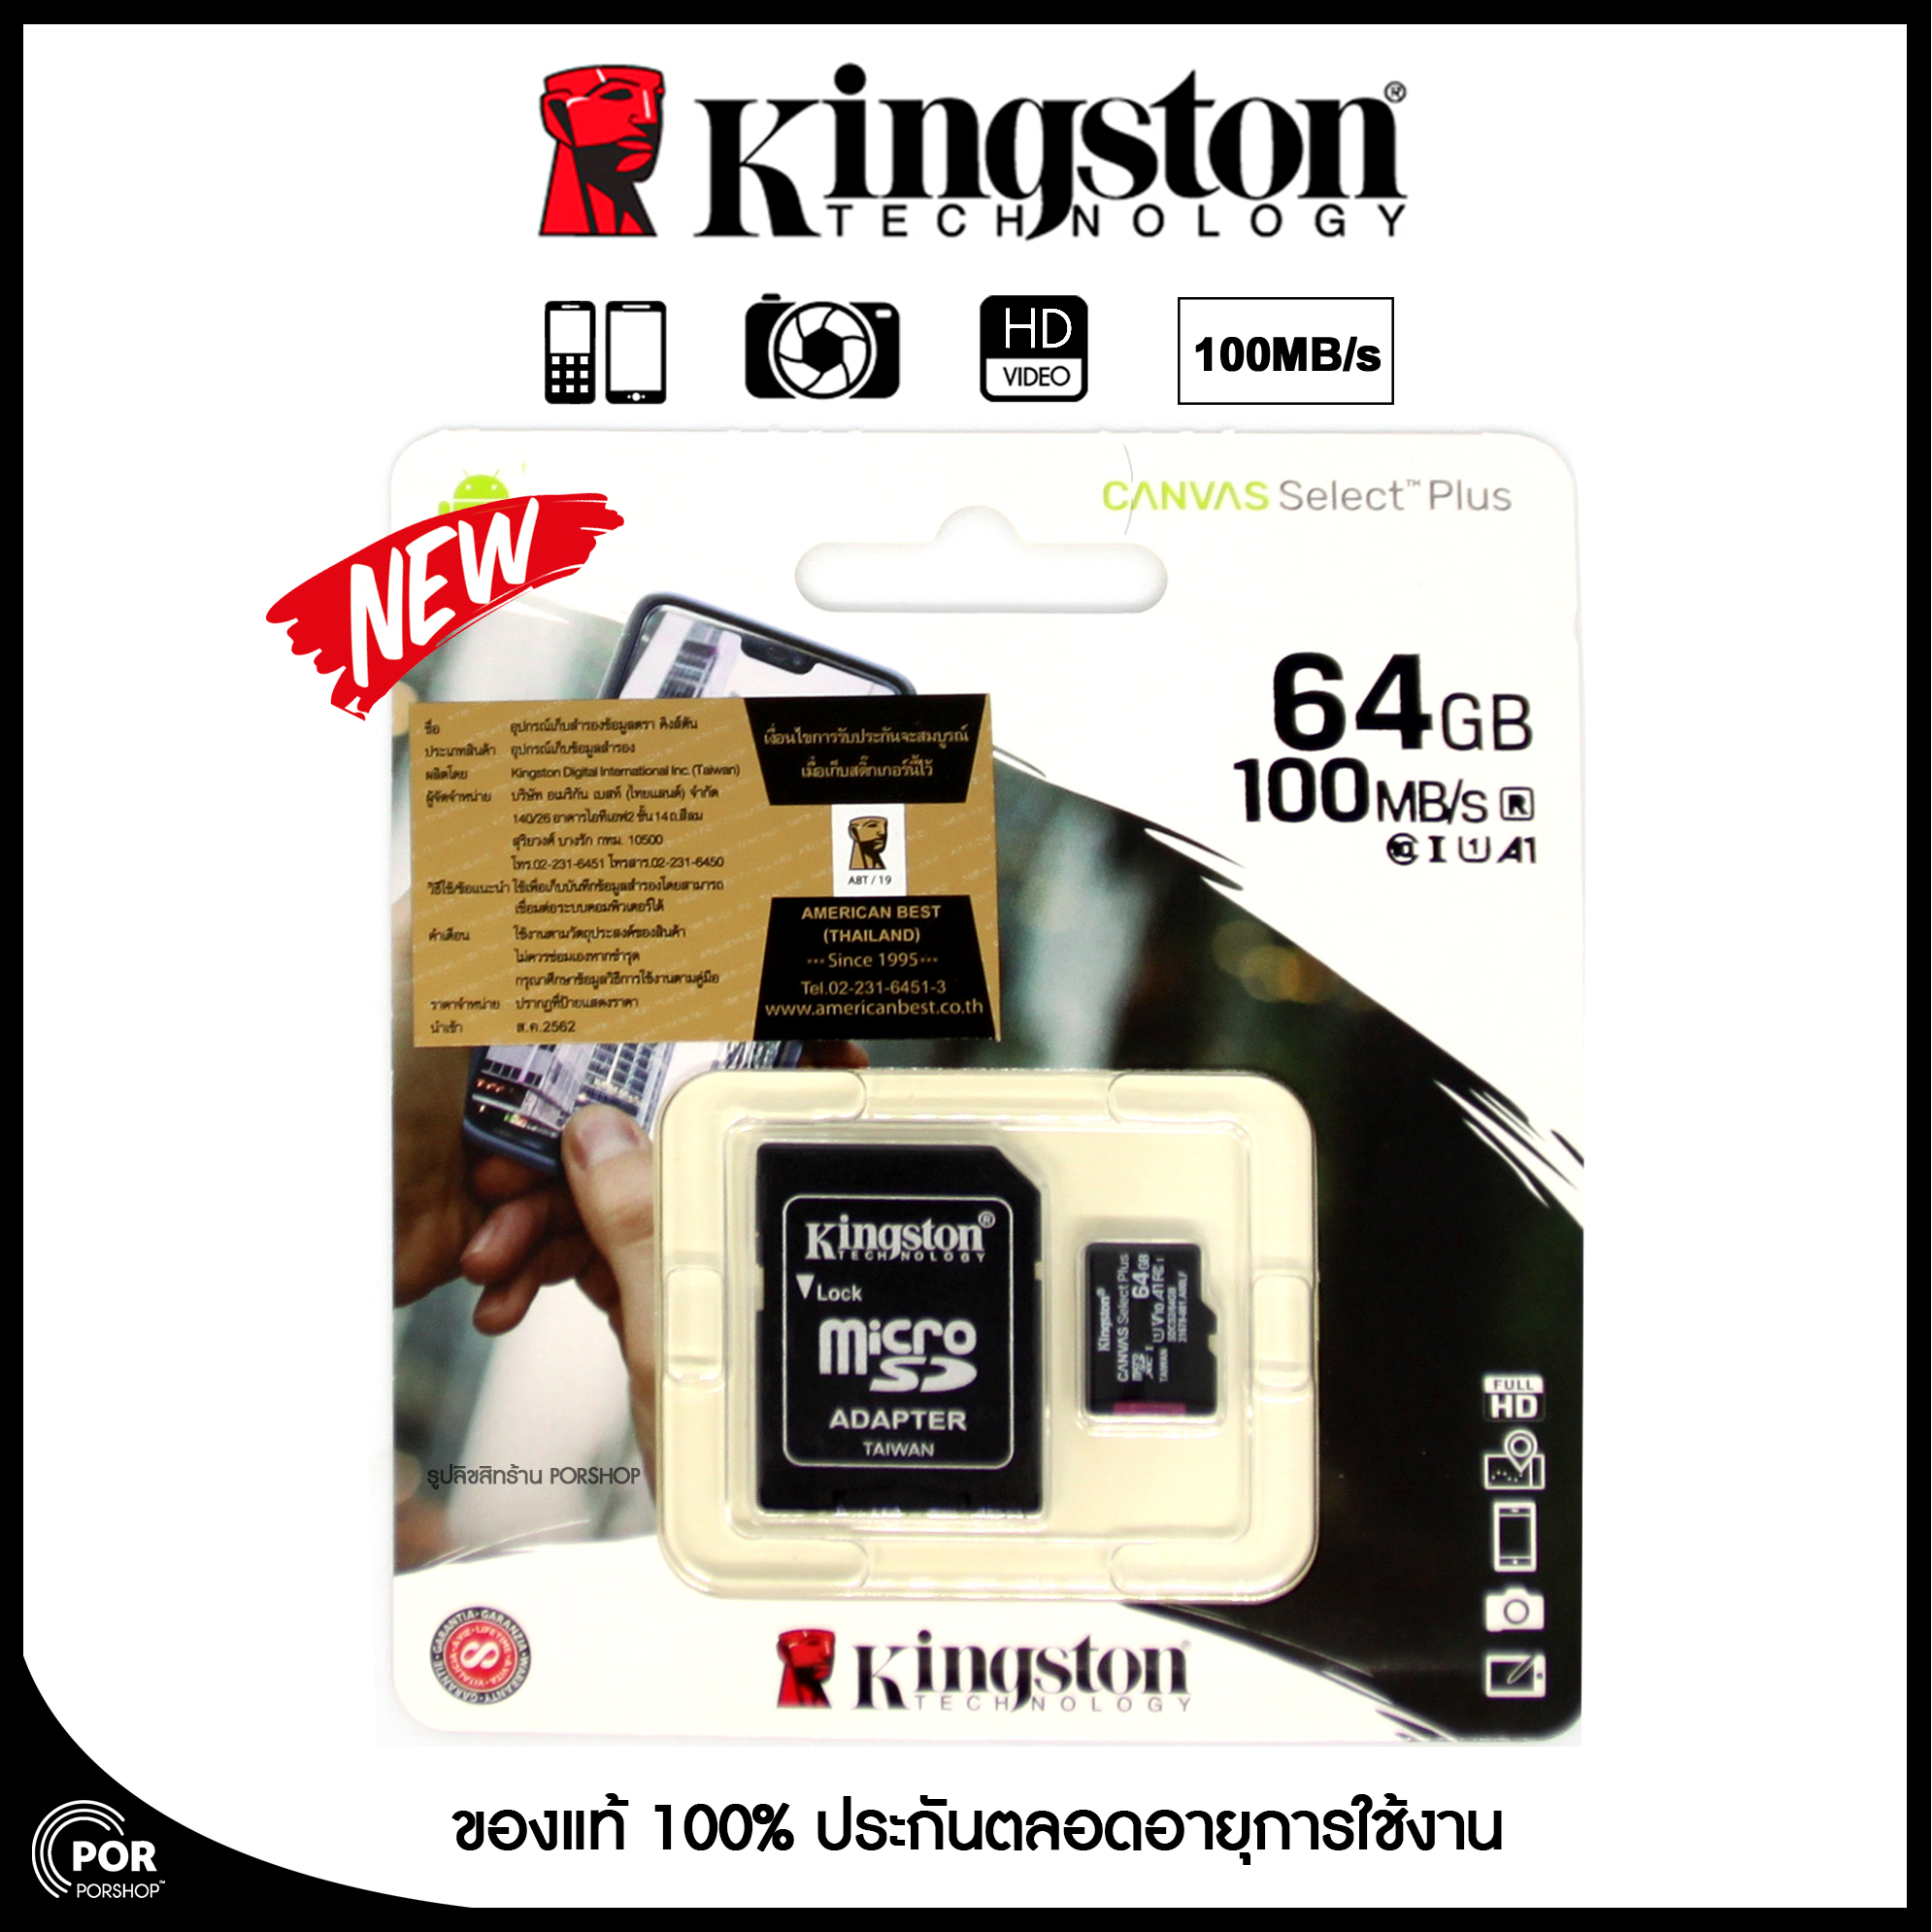 [ของแท้] Kingston Memory Card Micro SD SDHC 64 GB Class 10 คิงส์ตัน เมมโมรี่การ์ด 64 GB รุ่น แพ็ค1ชิ้น